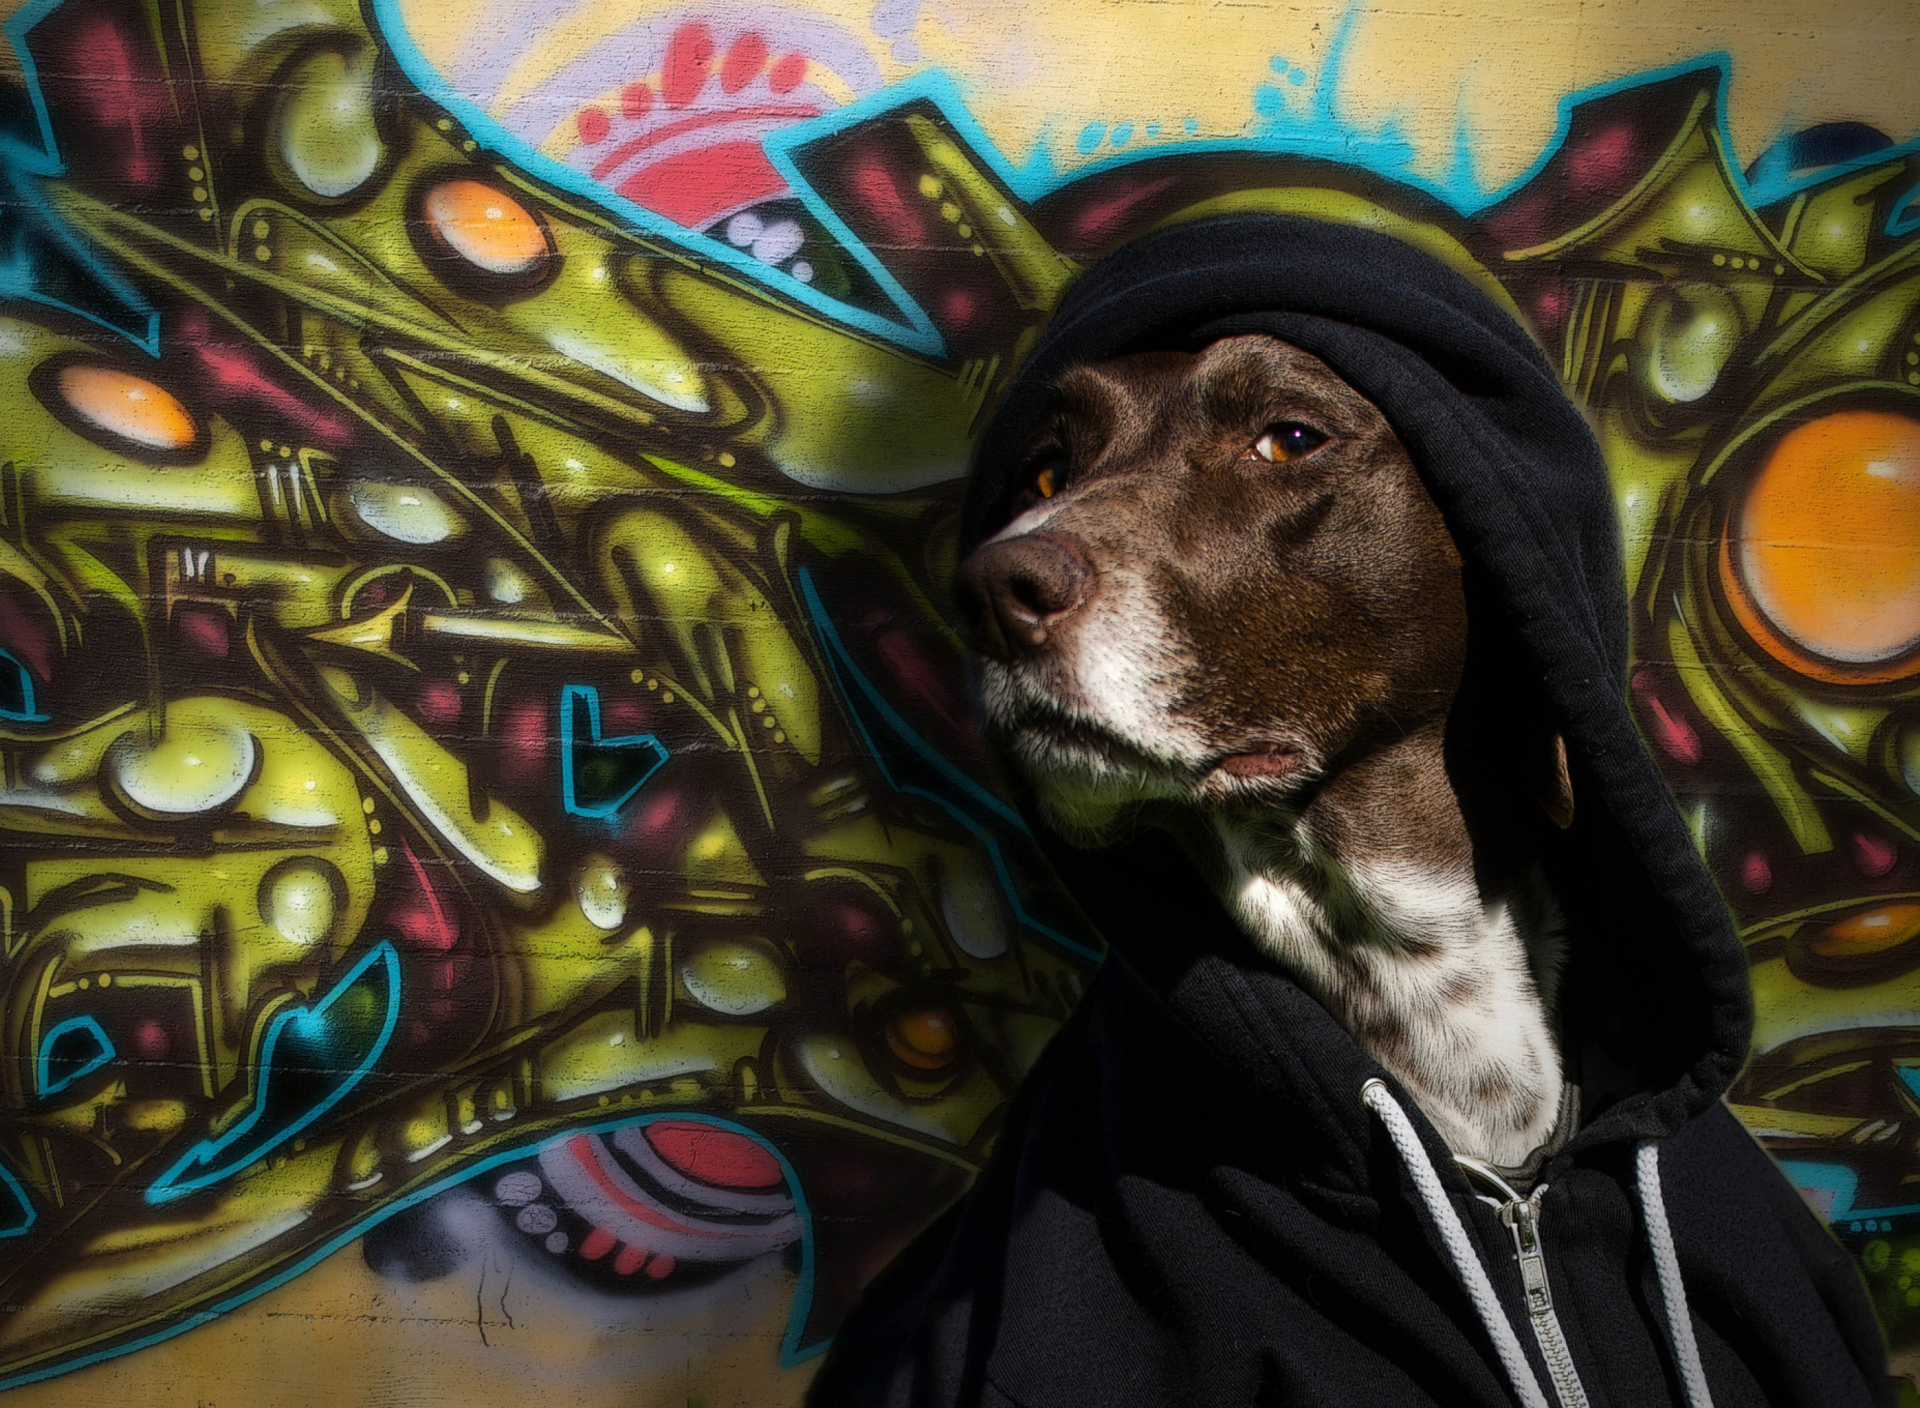 Sfondi Portrait Of Dog On Graffiti Wall 1920x1408